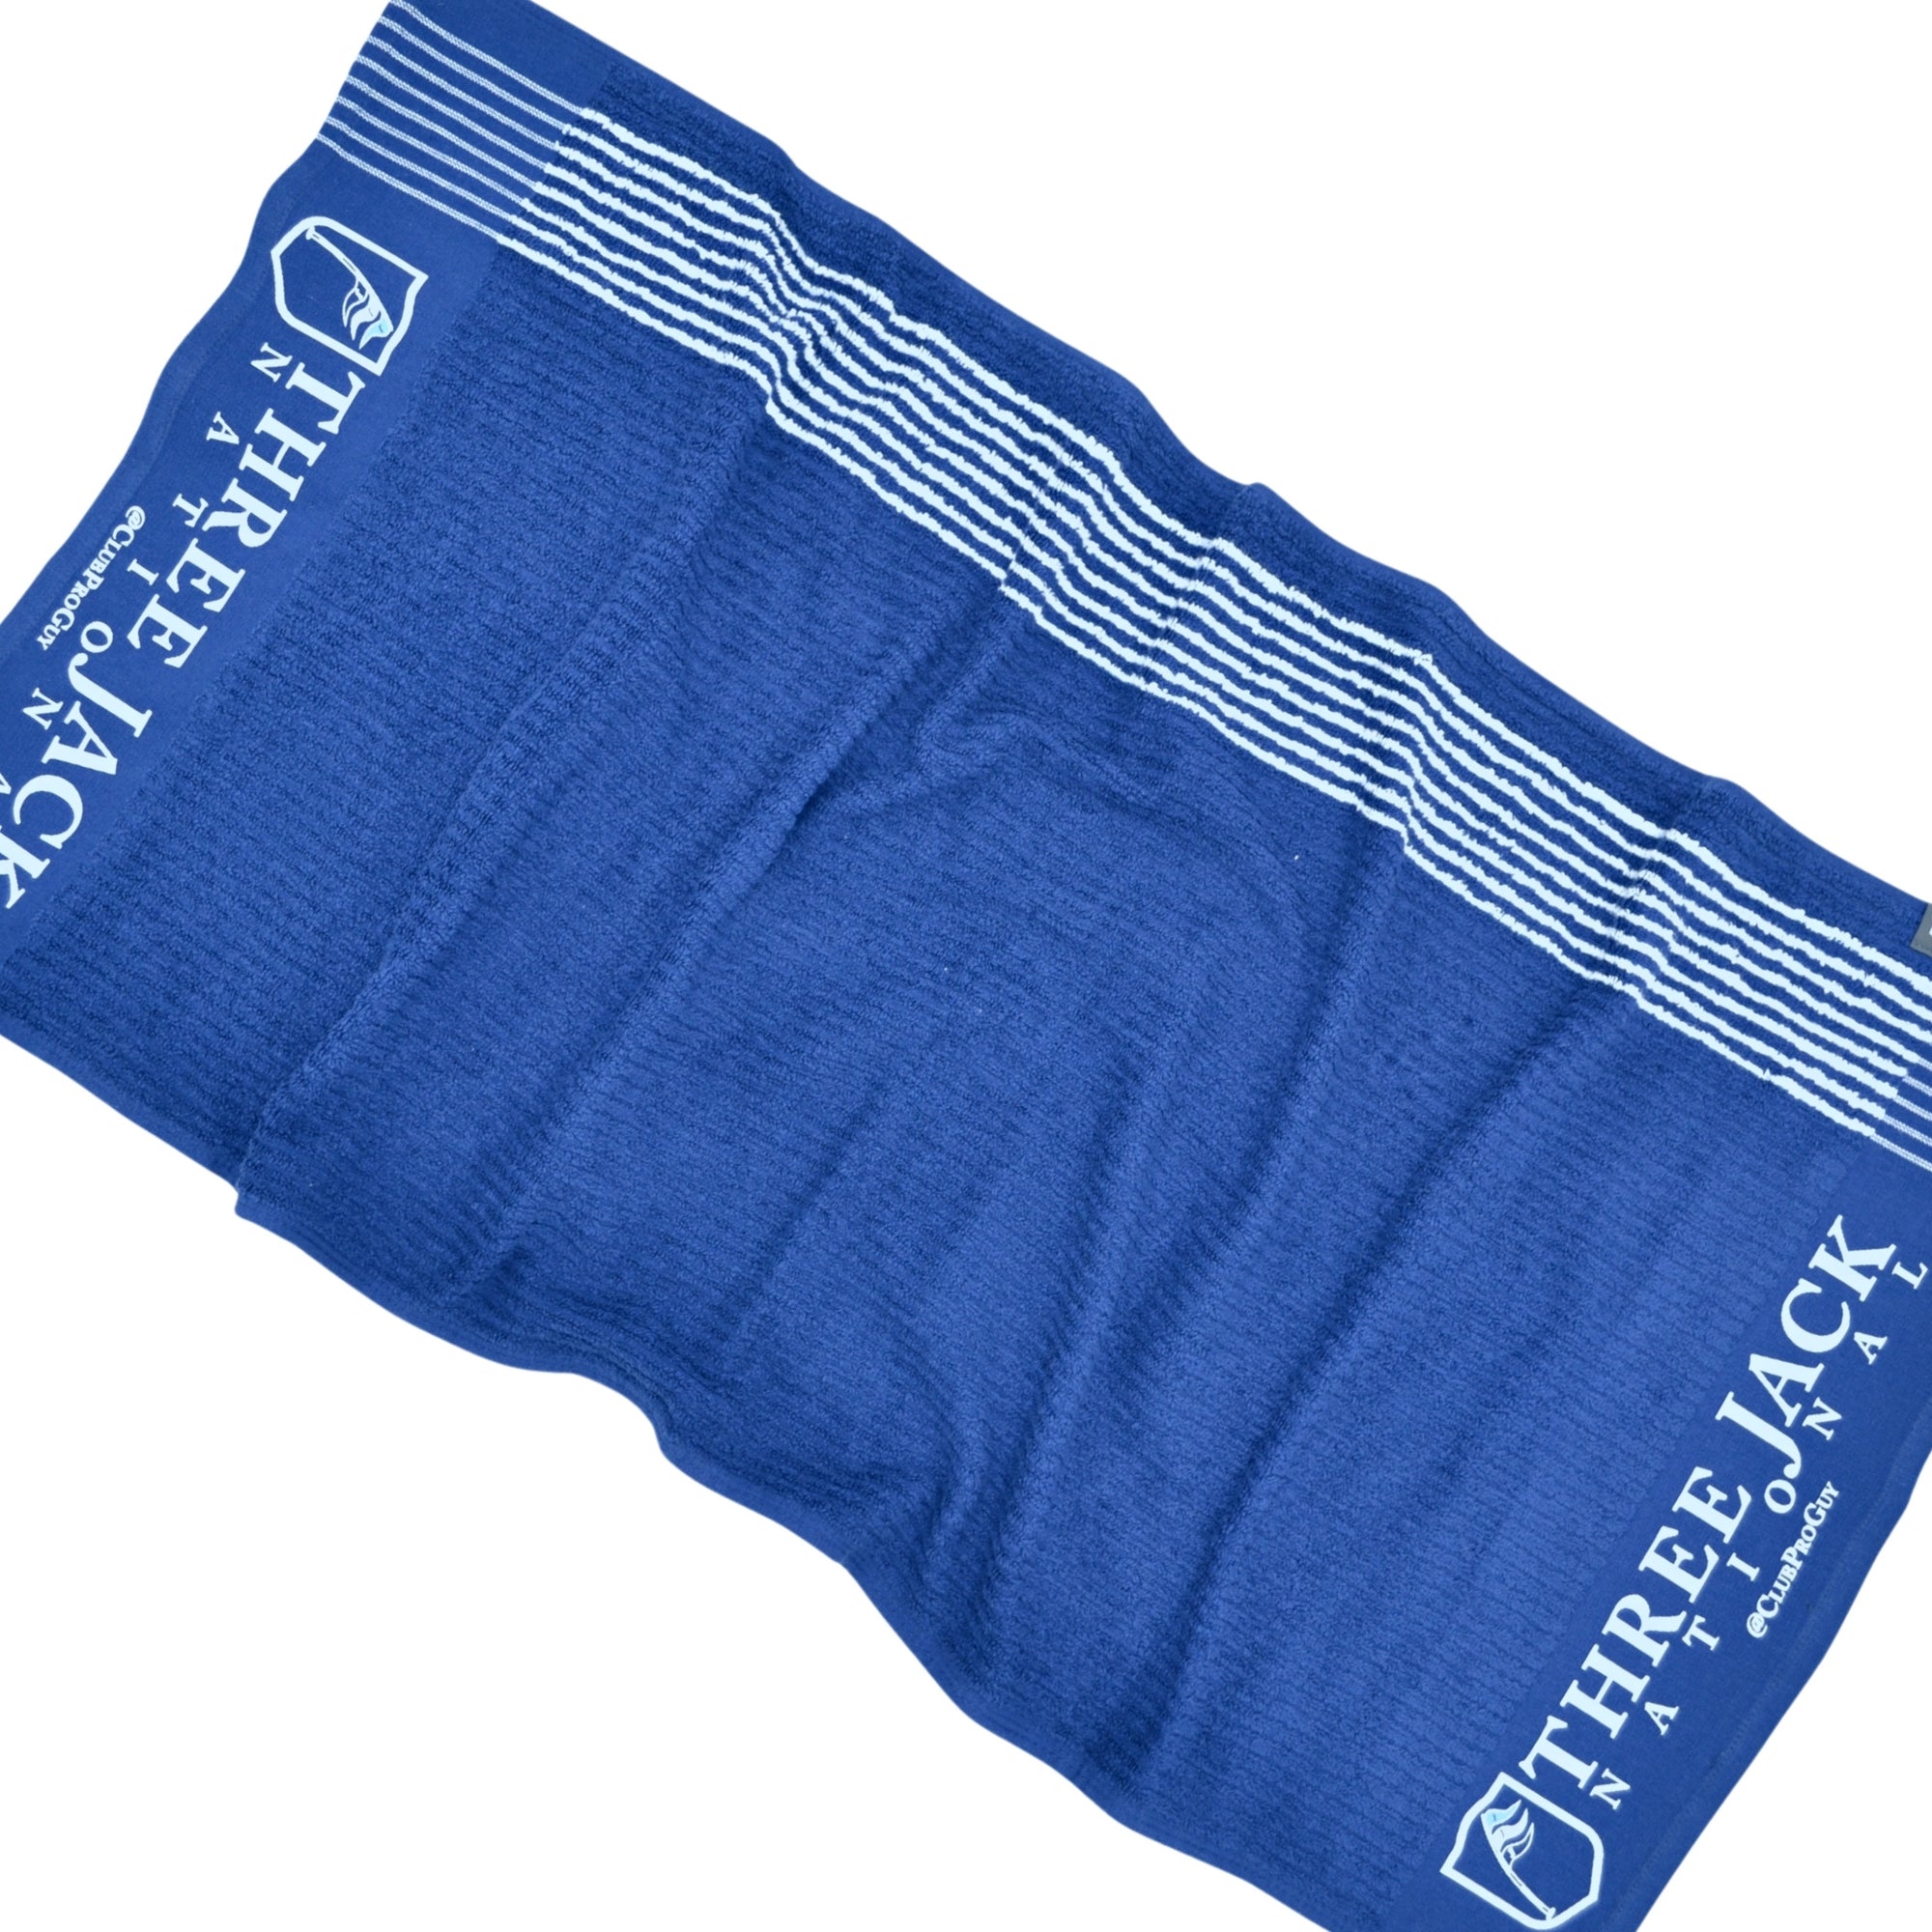 NOLAC Crossed Tees Golf Towel